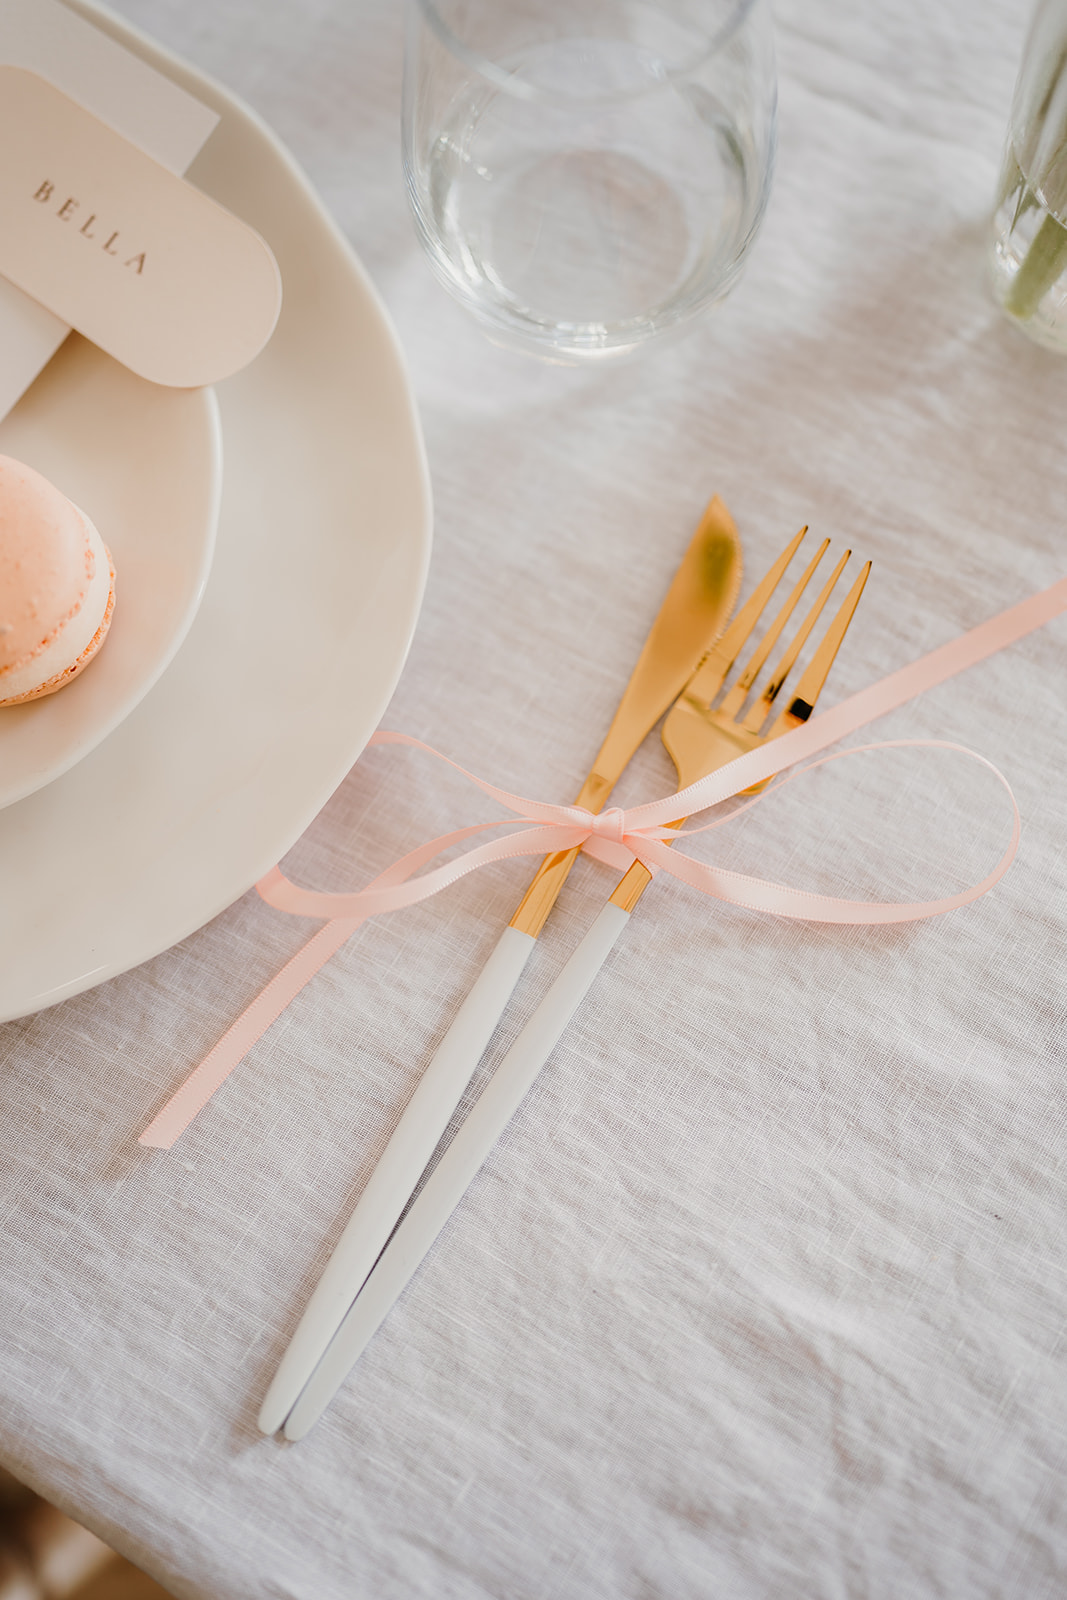 Wedding cutlery details